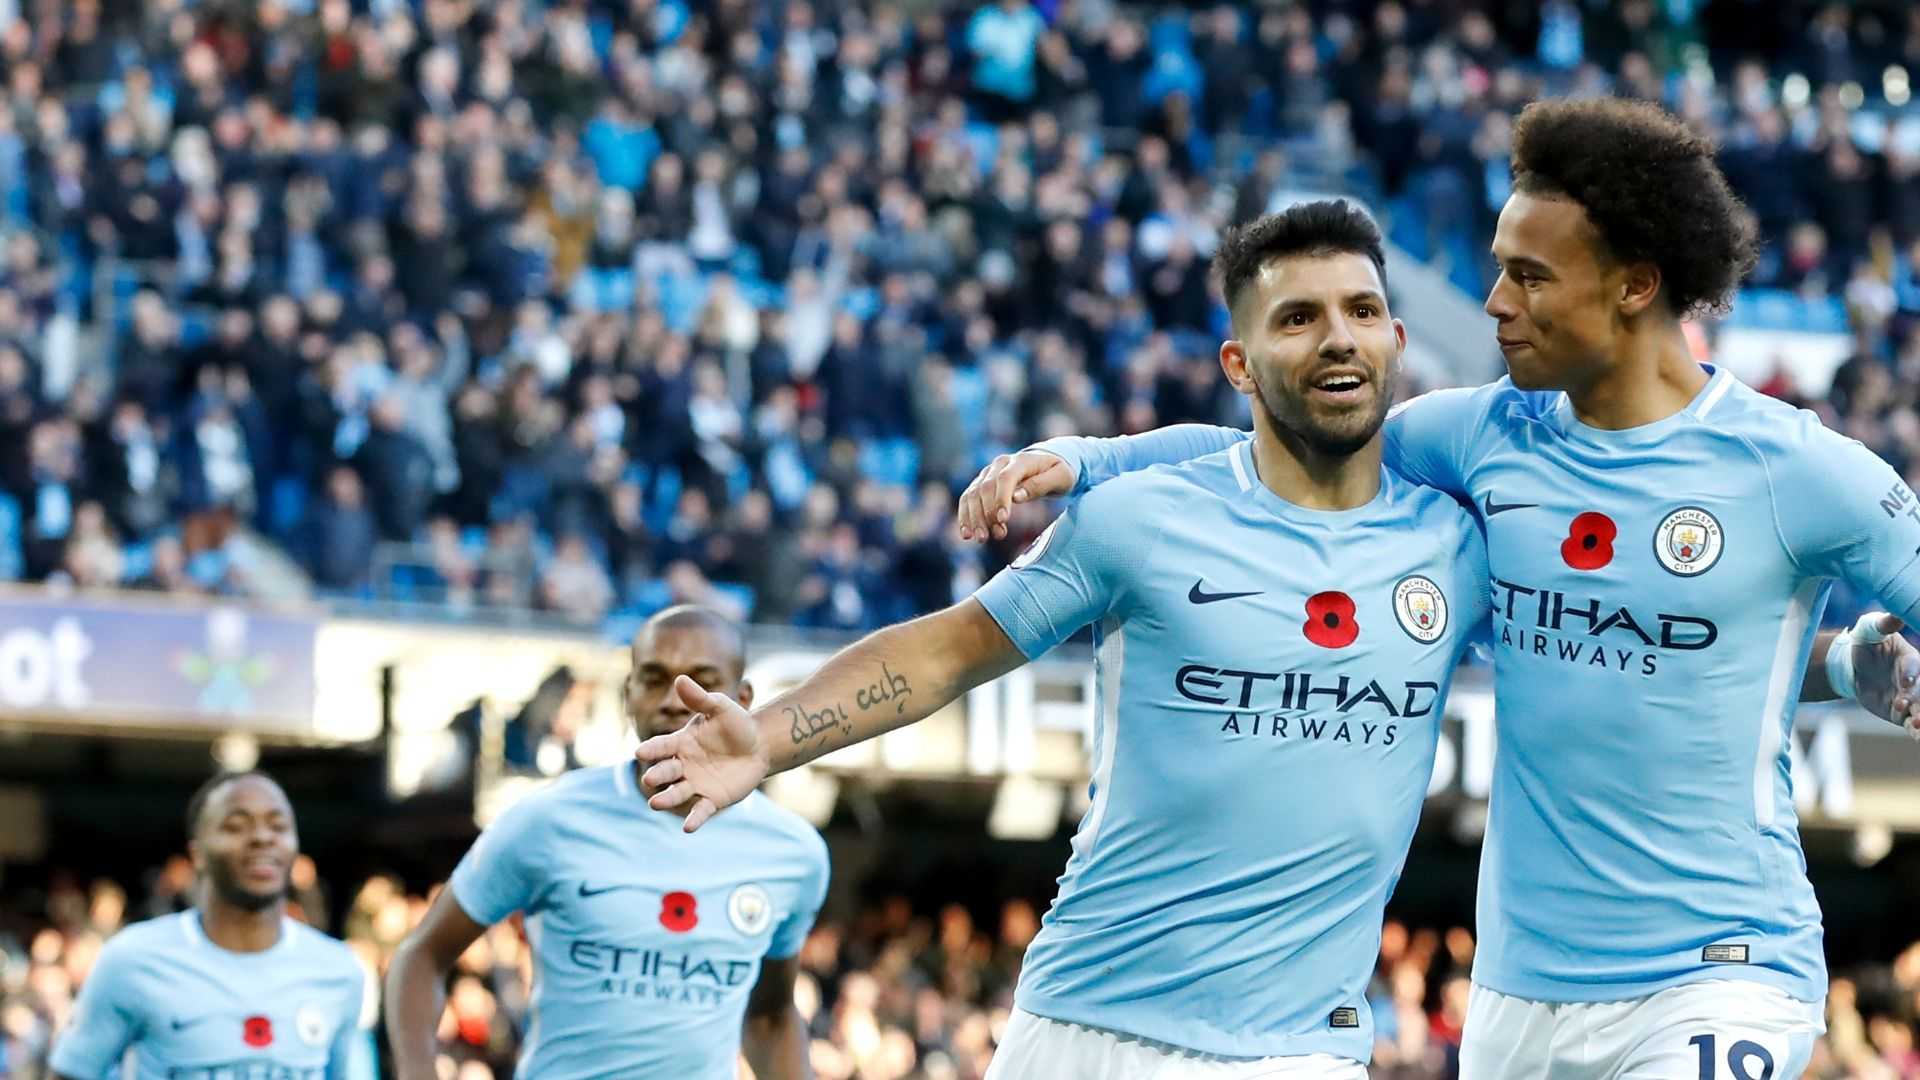 Manchester City 2018 Wallpaper HD Pics Five Key Fixtures For Man